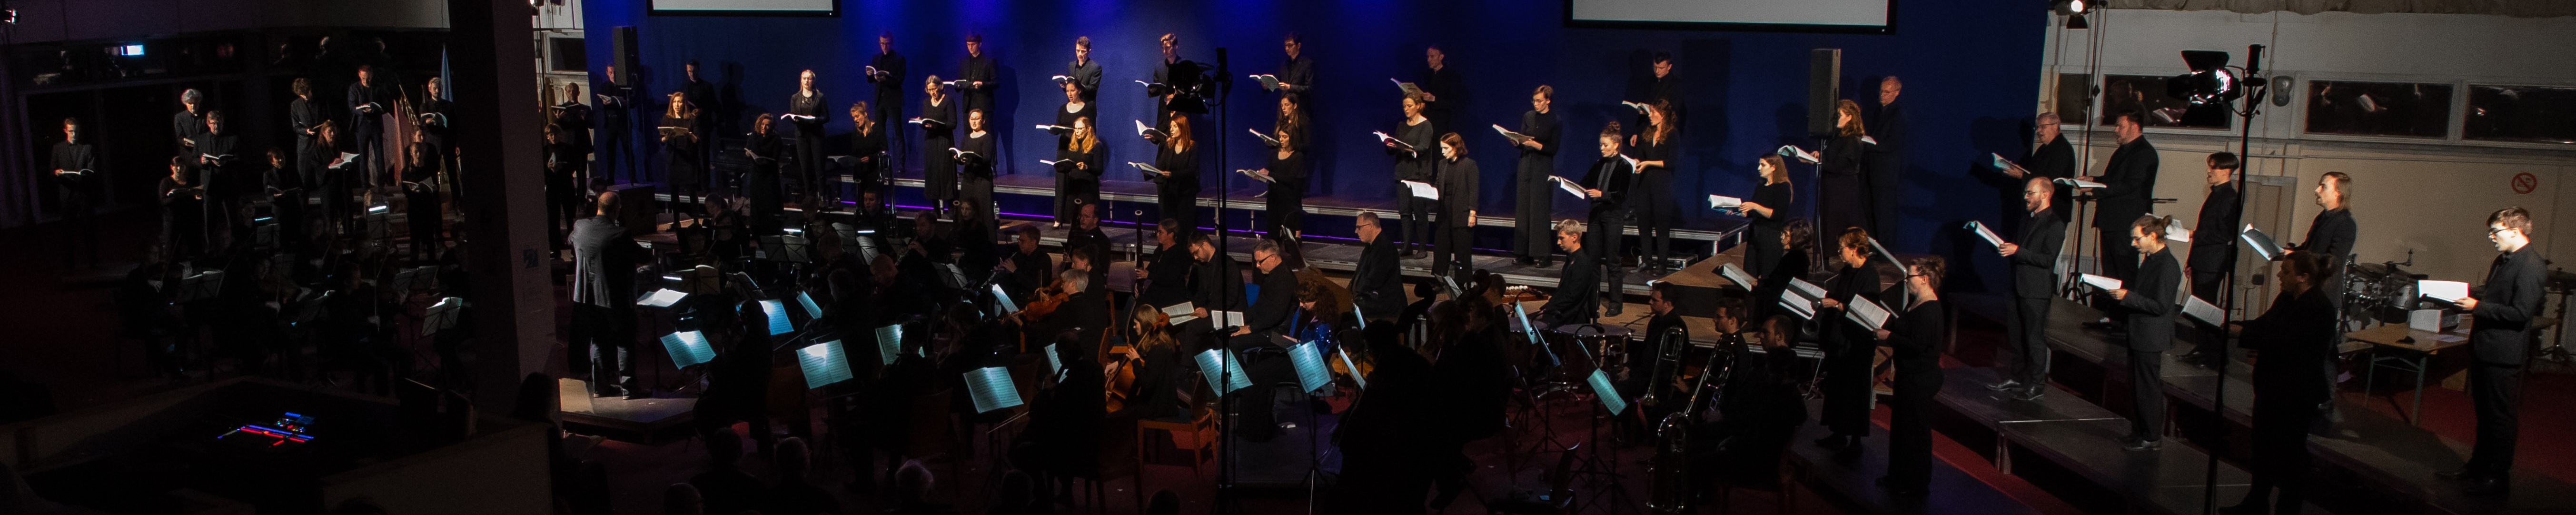 Chor und Orchester von Amici Musicae im Konzert, Foto: Axel Dorndorf (event_fotofino)